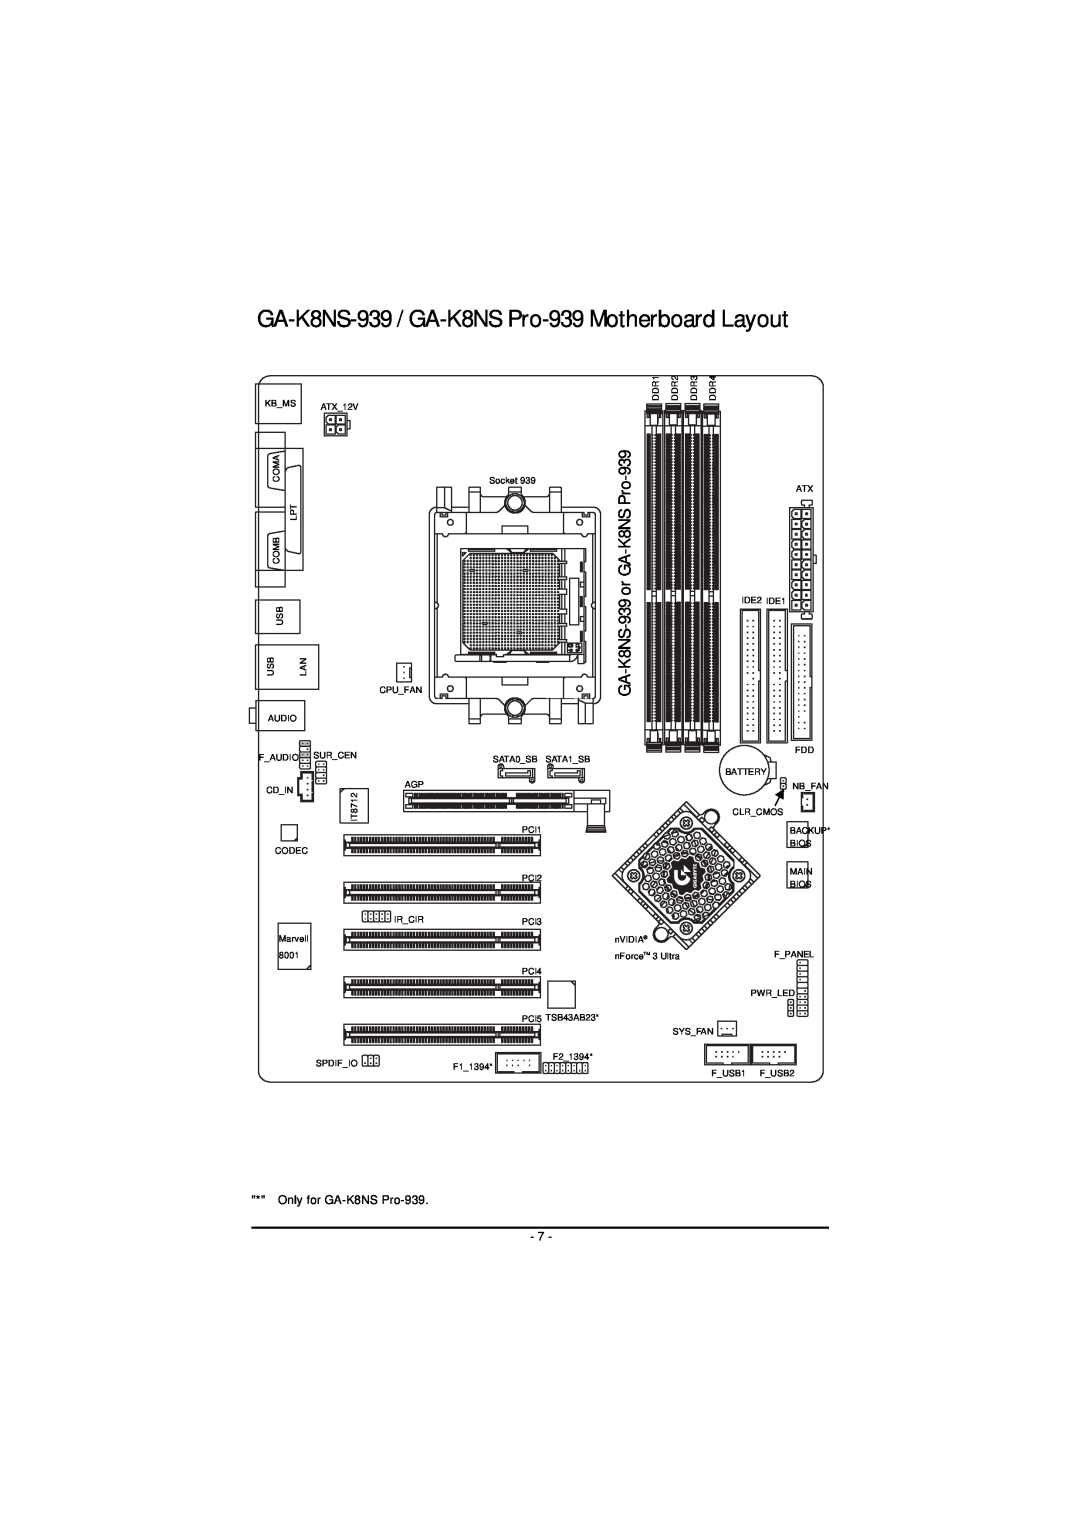 AMD GA-K8NS PRO-939 user manual GA-K8NS-939 / GA-K8NS Pro-939 Motherboard Layout, GA-K8NS-939 or GA-K8NS Pro, Socket 